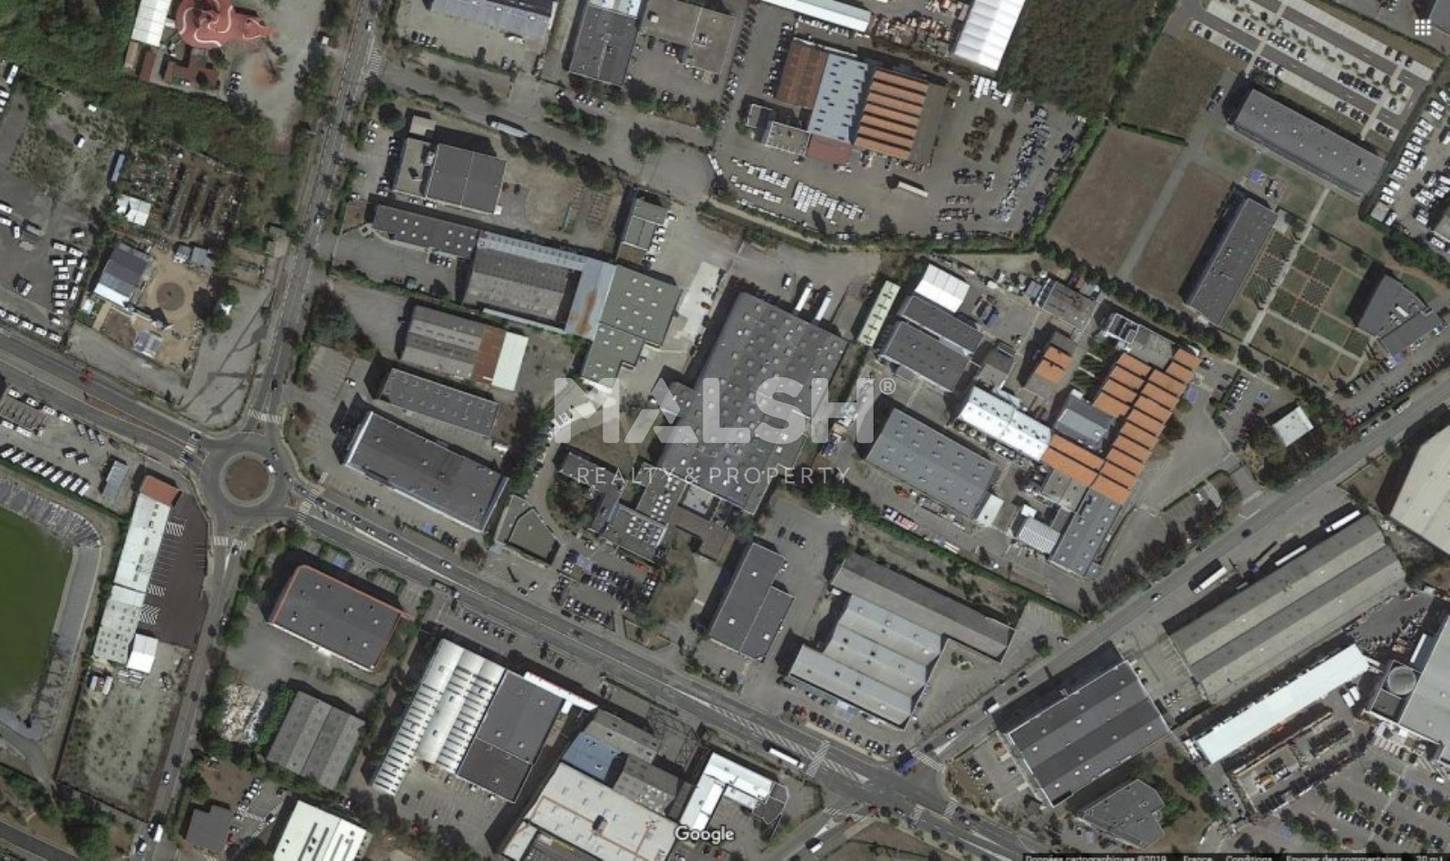 MALSH Realty & Property - Logistique - Lyon EST (St Priest /Mi Plaine/ A43 / Eurexpo) - Saint-Priest - MD_